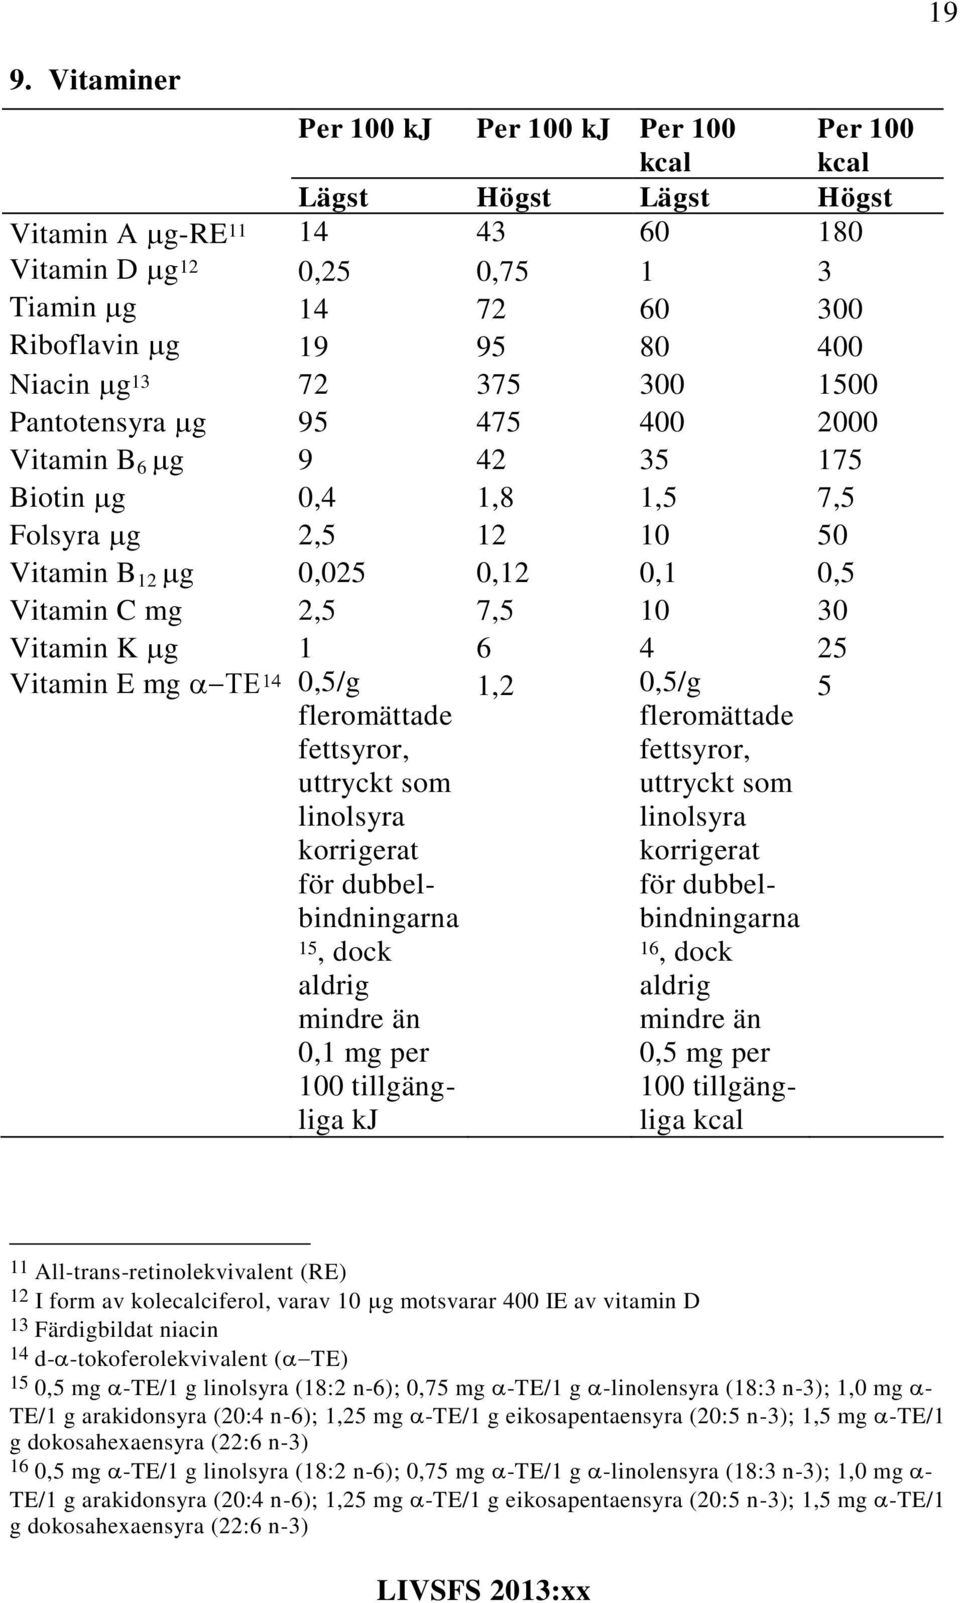 Vitamin K g 1 6 4 25 Vitamin E mg 0,5/g fleromättade fettsyror, uttryckt som linolsyra korrigerat för dubbelbindningarna 15, dock aldrig mindre än 0,1 mg per 100 tillgängliga kj 1,2 0,5/g